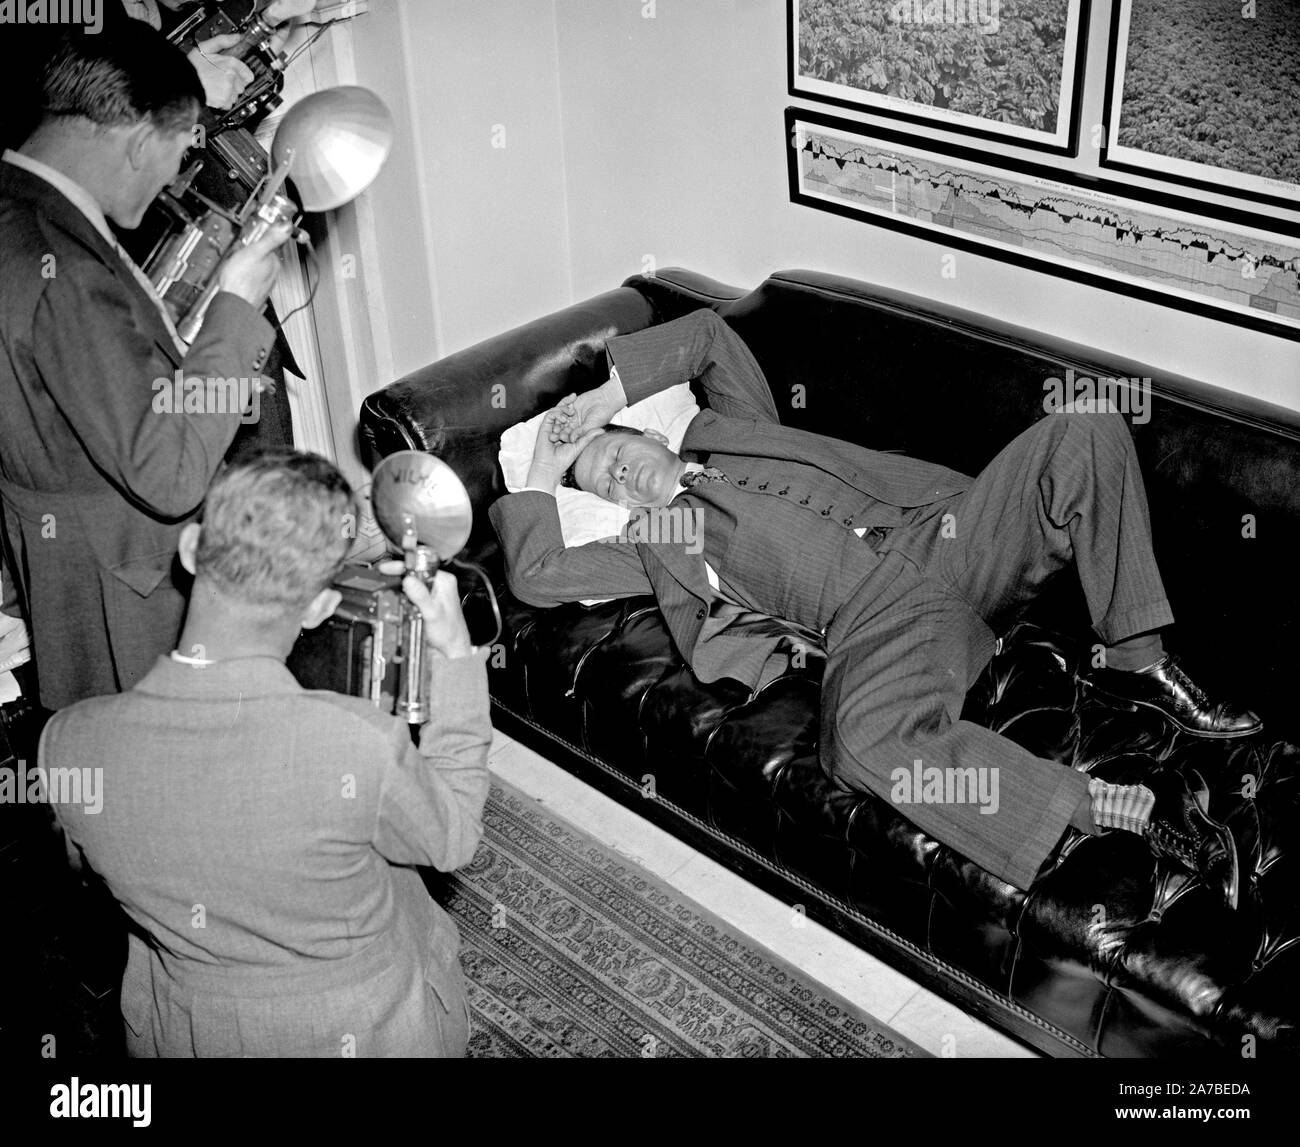 Le sénateur Allen Ellender-démocrate de Louisiane et onetime Lieutenant de la fin Huey Long, est pris par les cadreurs comme il se repose dans son bureau ca. 1938 Banque D'Images